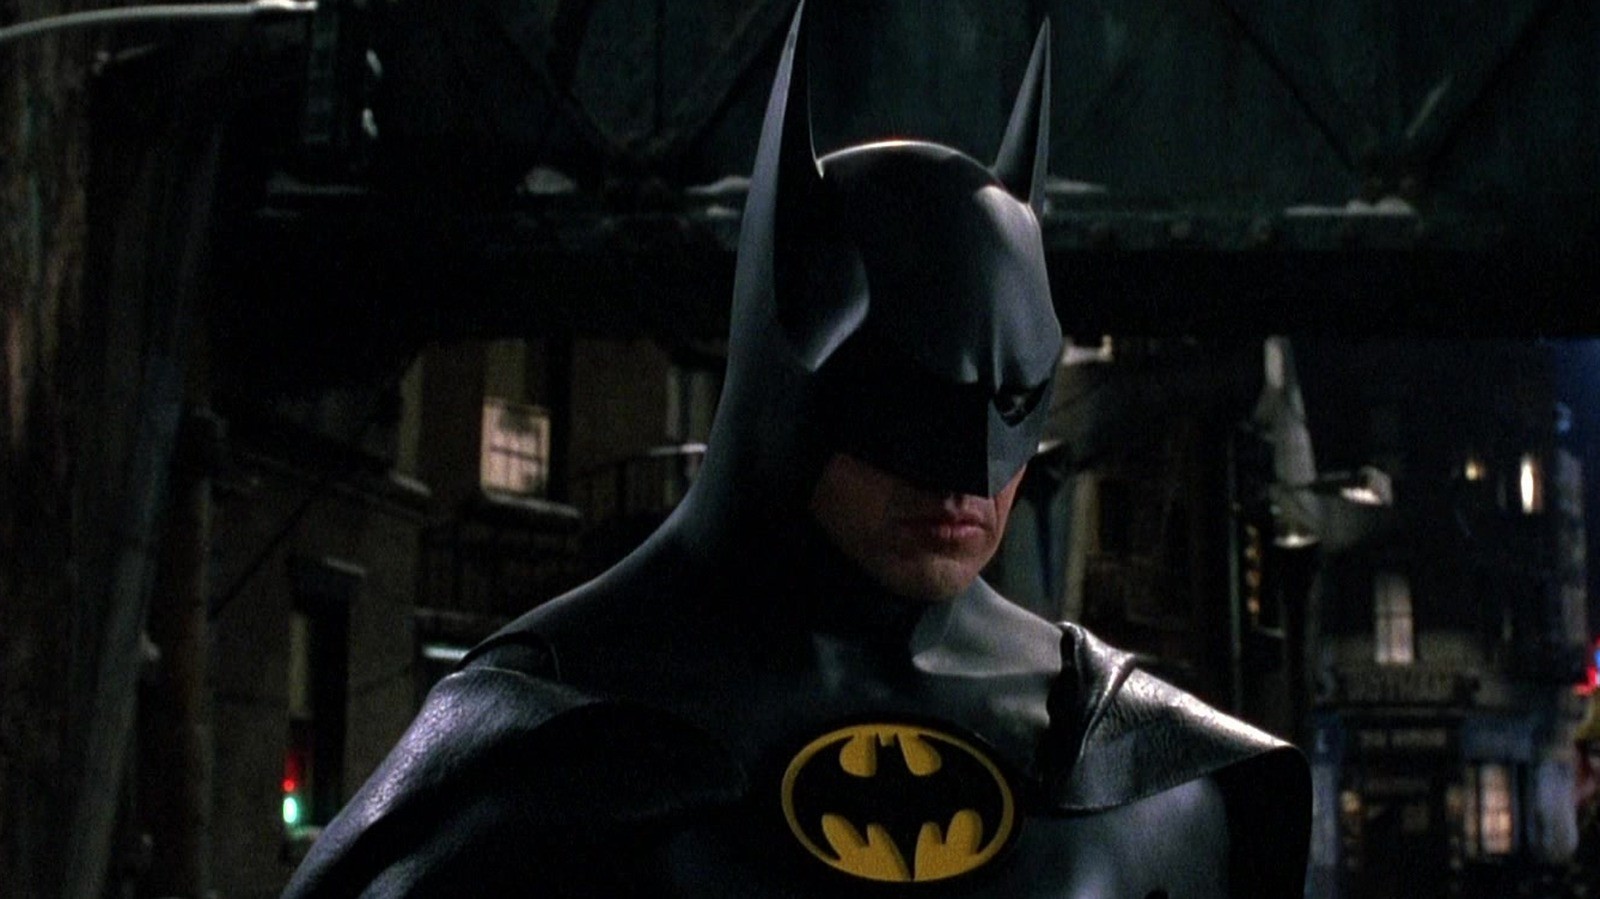 Batman Beyond reportedly had Keaton's Batman in it